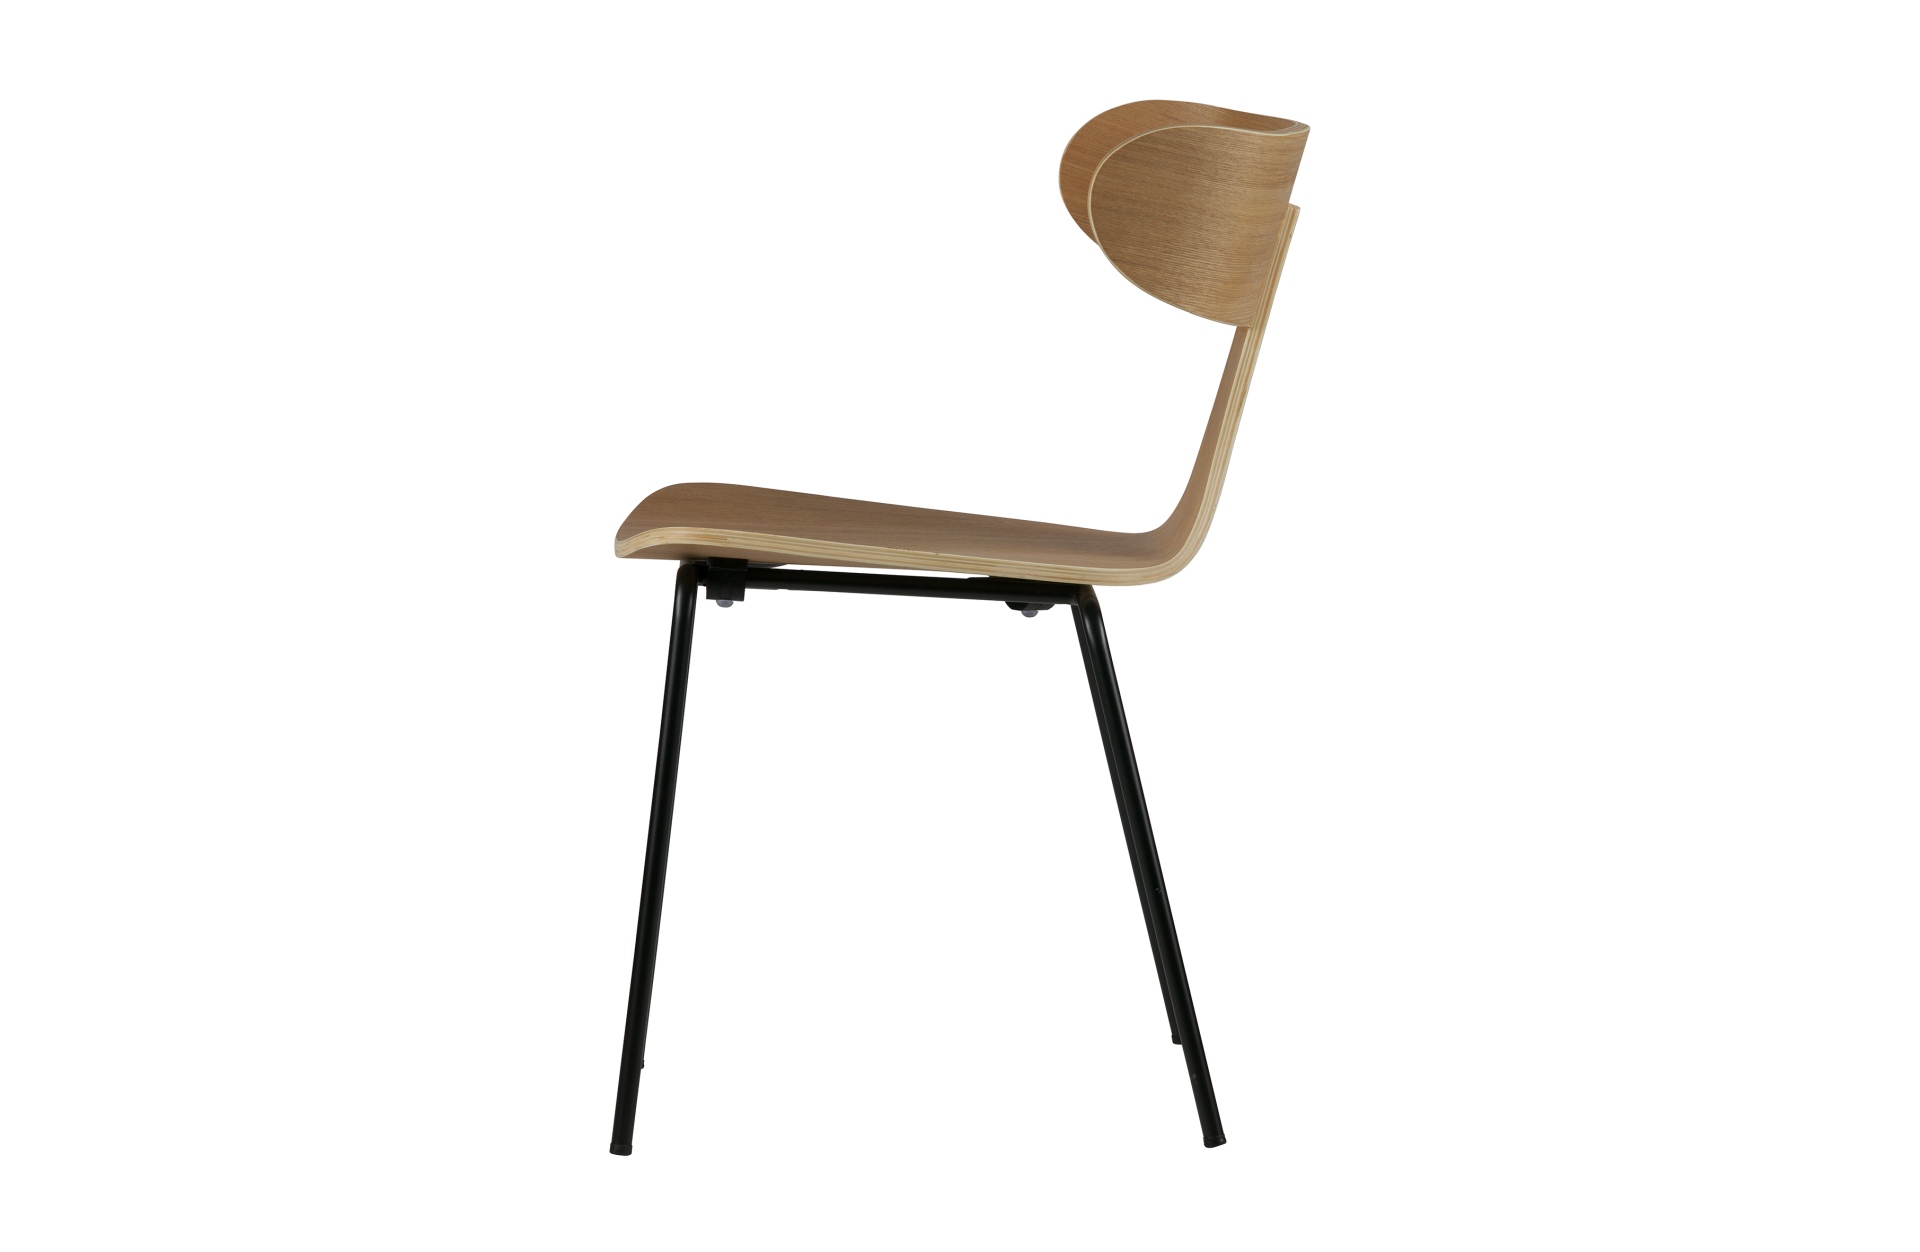 Der Stuhl Form überzeugt mit seinem besonderen Design. Gefertigt wurde der Stuhl aus Holz, welches einen natur Farbton besitzt. Das Gestell ist schwarz und wurde aus Metall gefertigt.